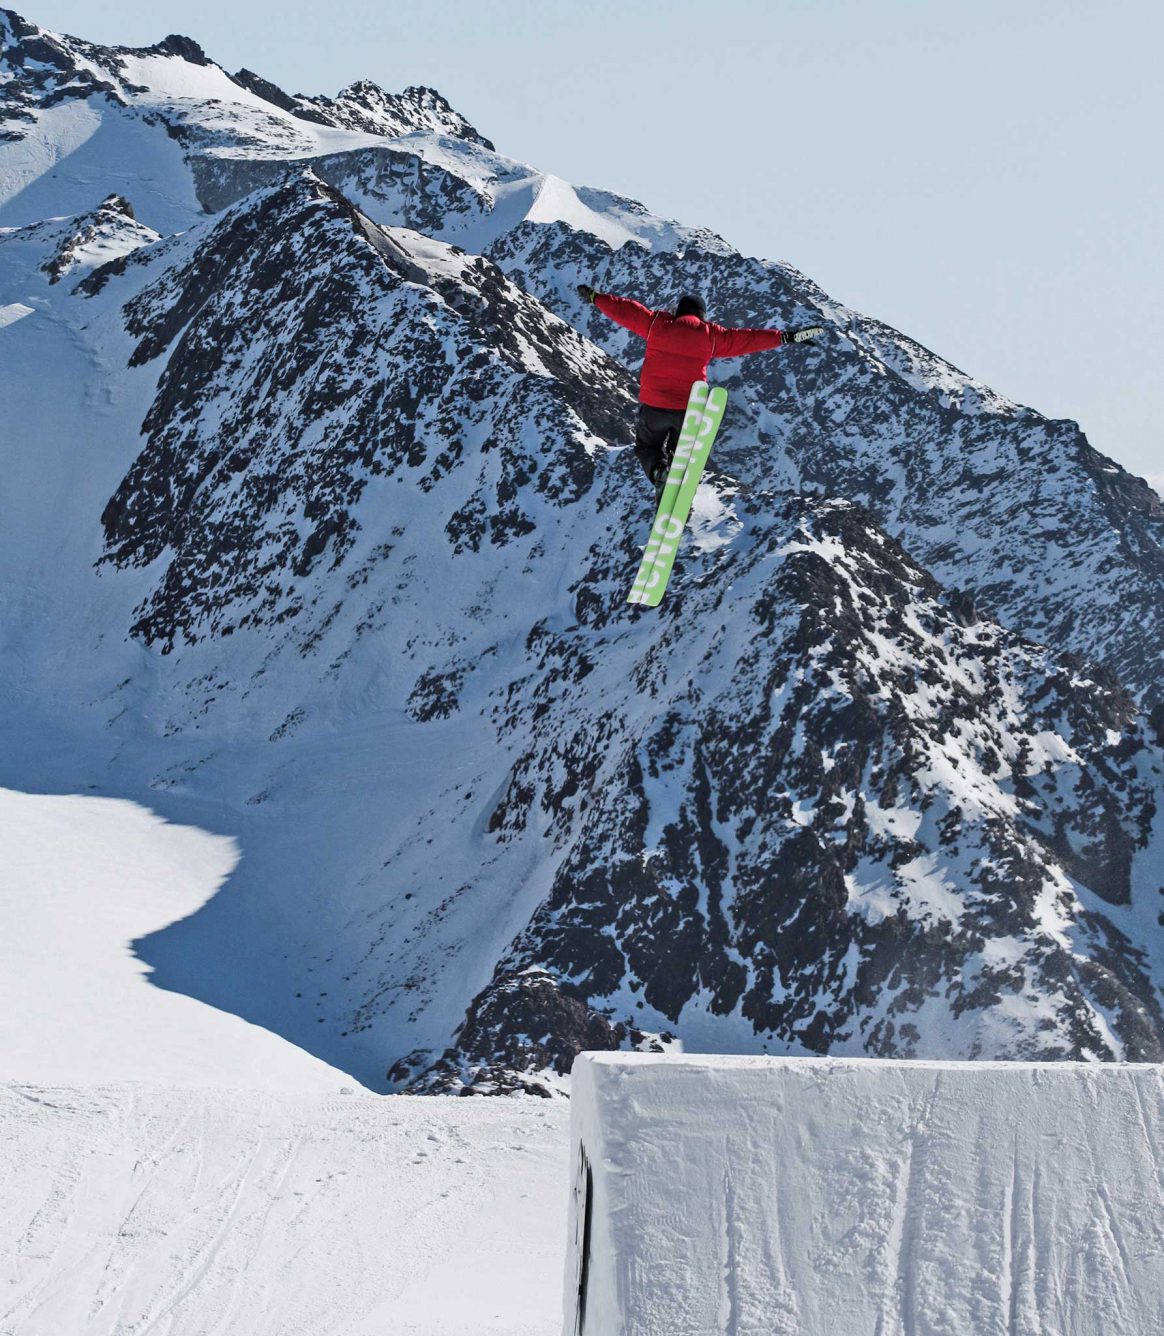 Rosina Friedel airs a jump at Stubai Glacier.